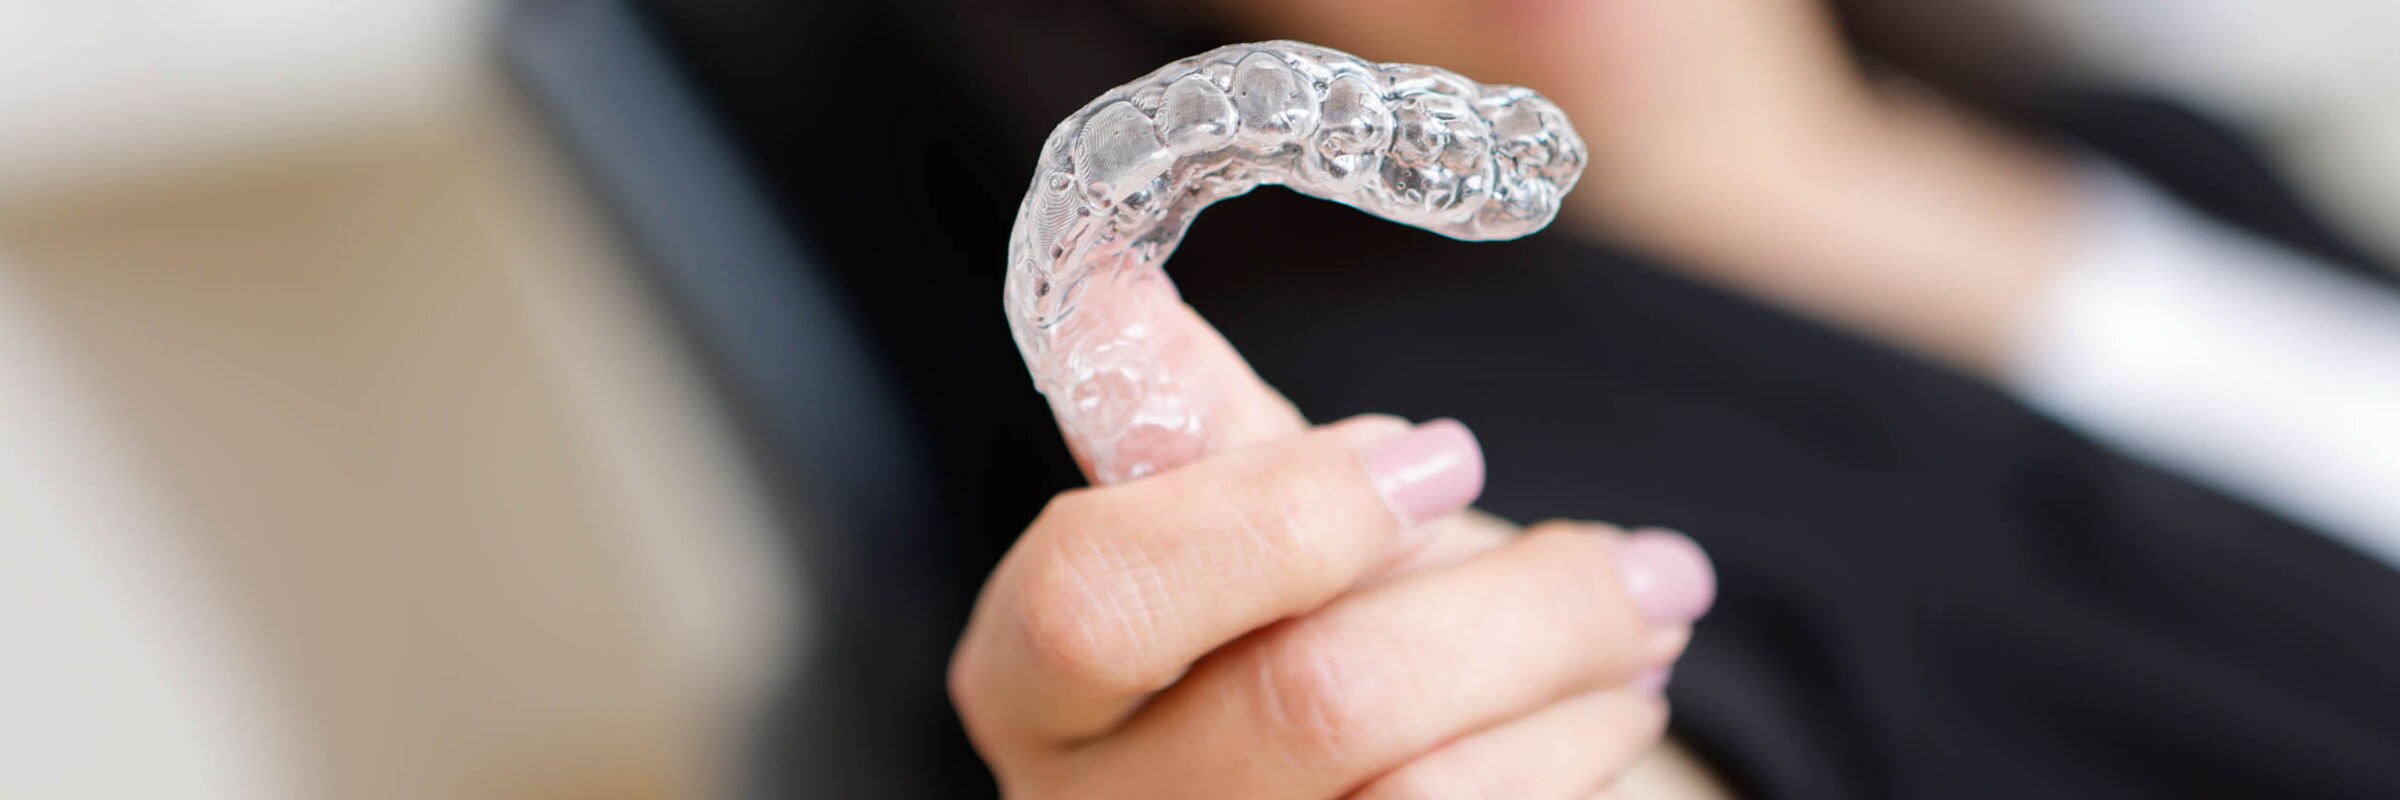 Unsichtbare Zahnspangen | Zahnarztpraxis Klenke in Baunatal